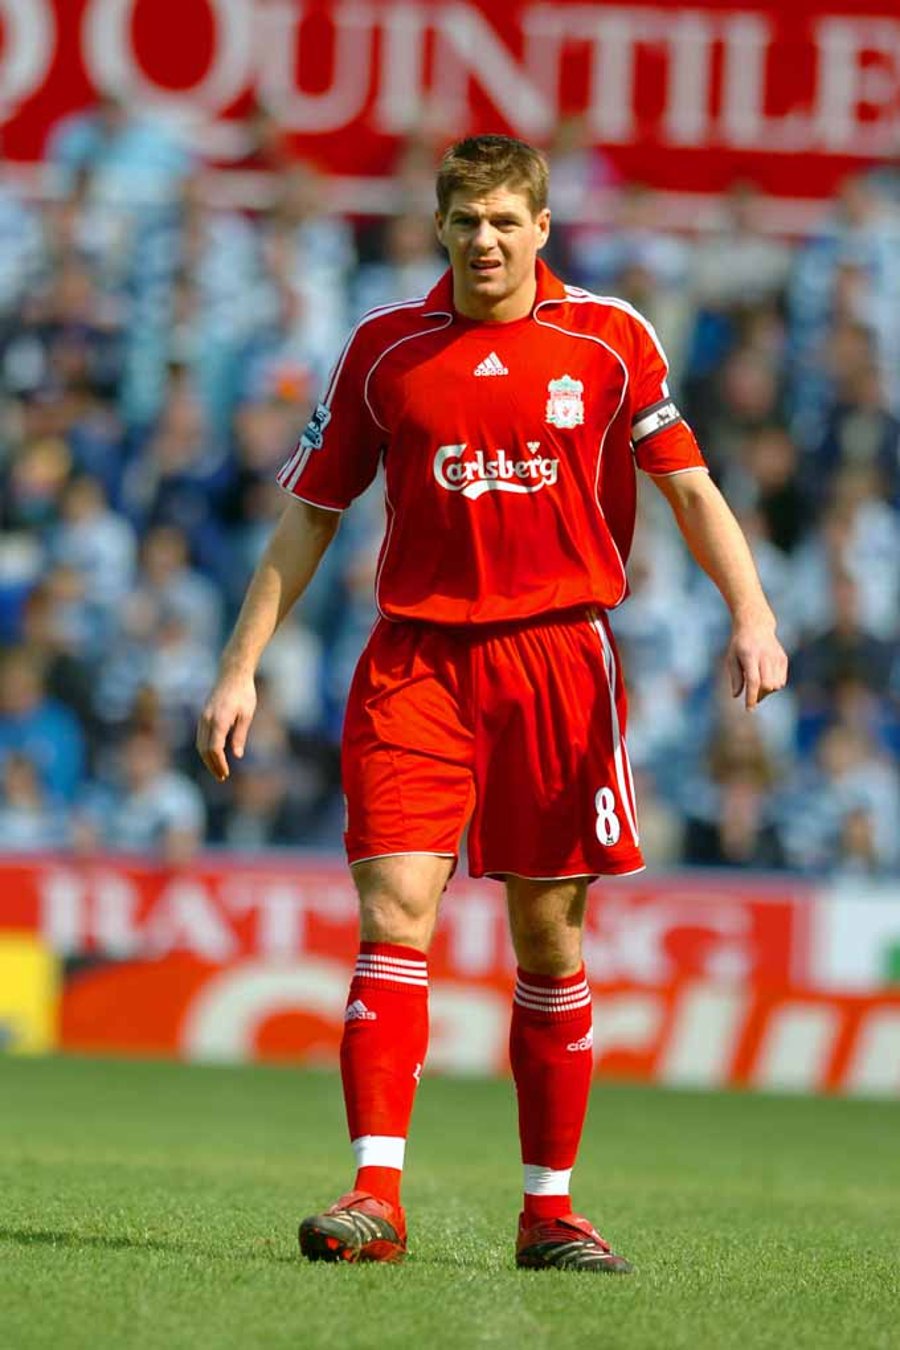 Liverpool FC Player Steven Gerrard Photograph Print